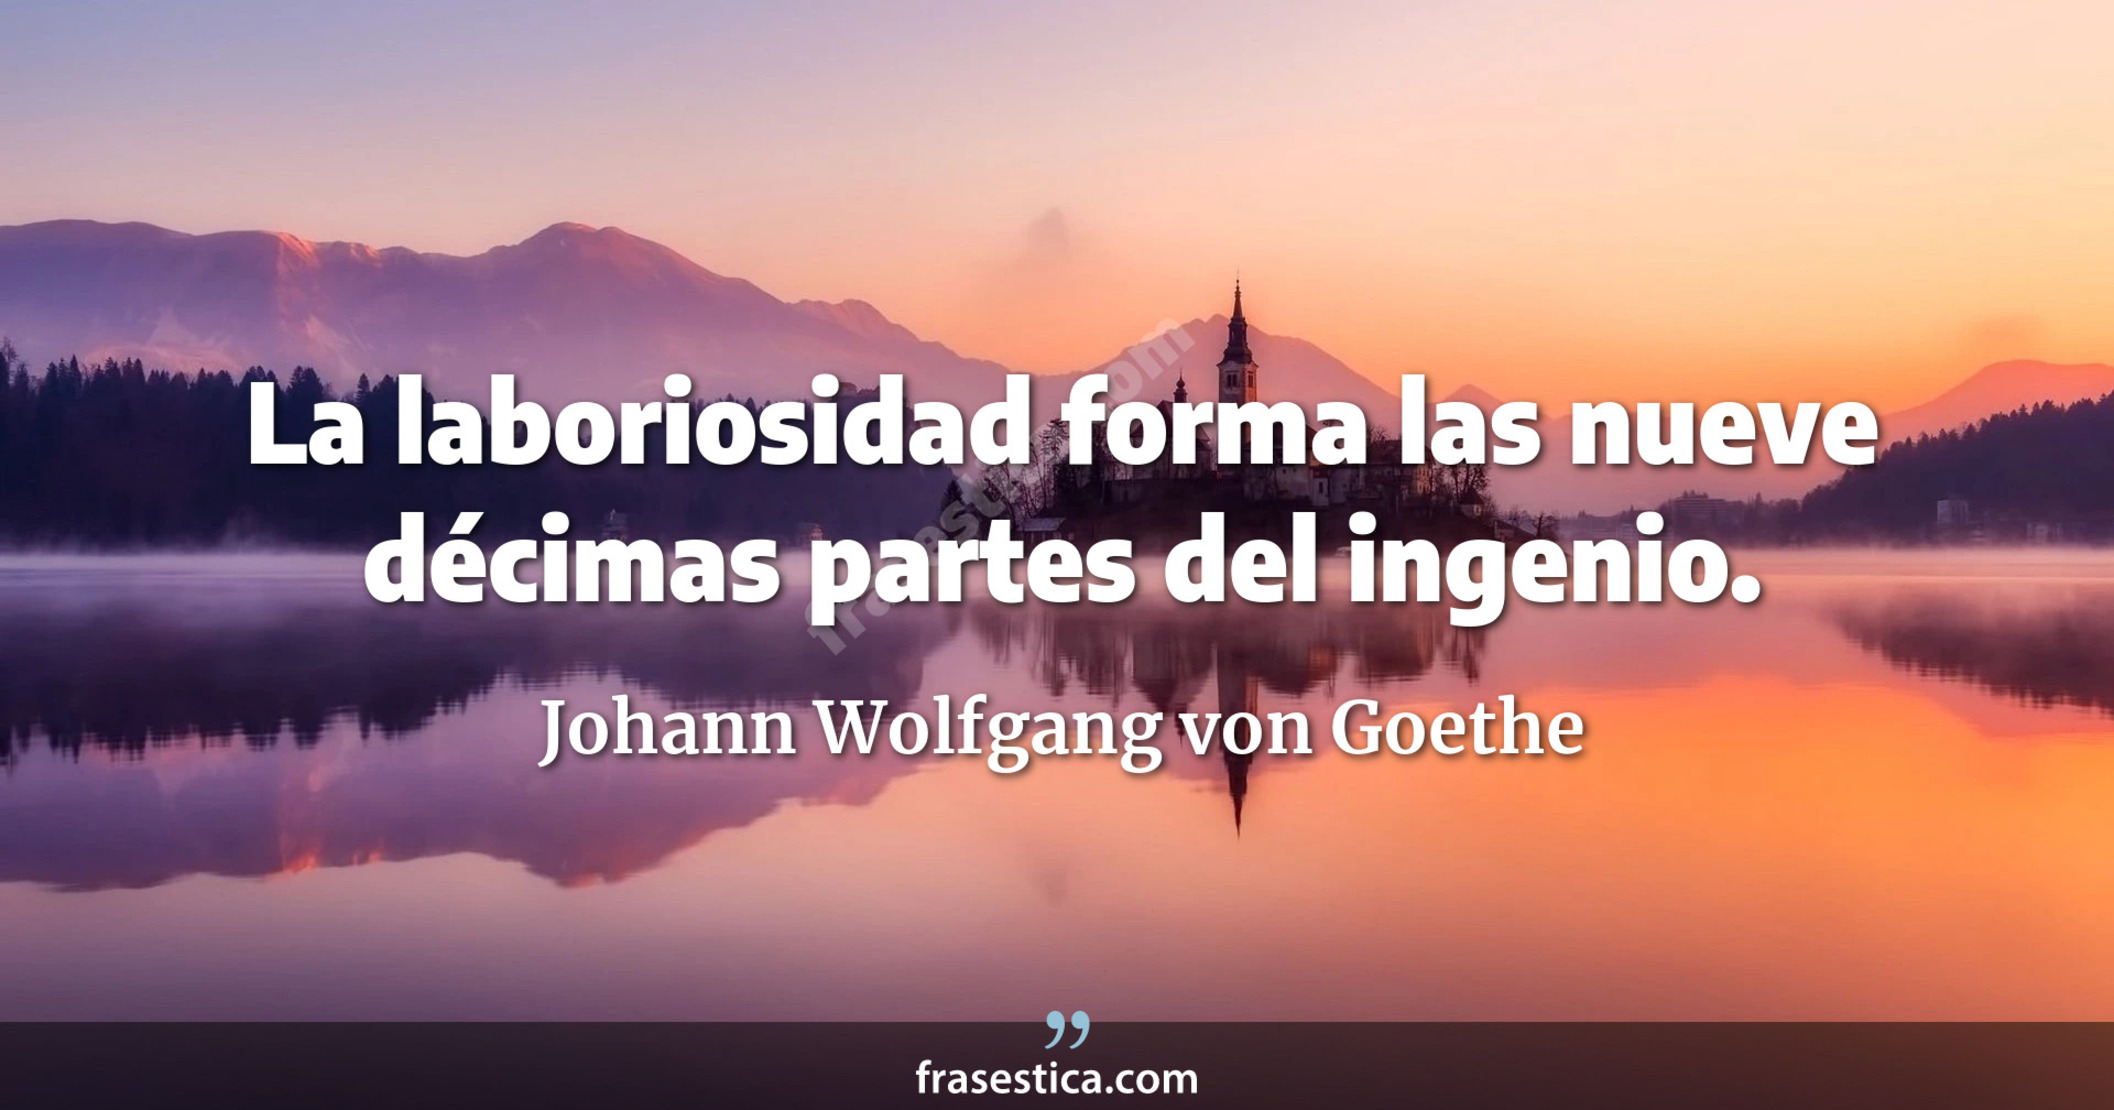 La laboriosidad forma las nueve décimas partes del ingenio. - Johann Wolfgang von Goethe